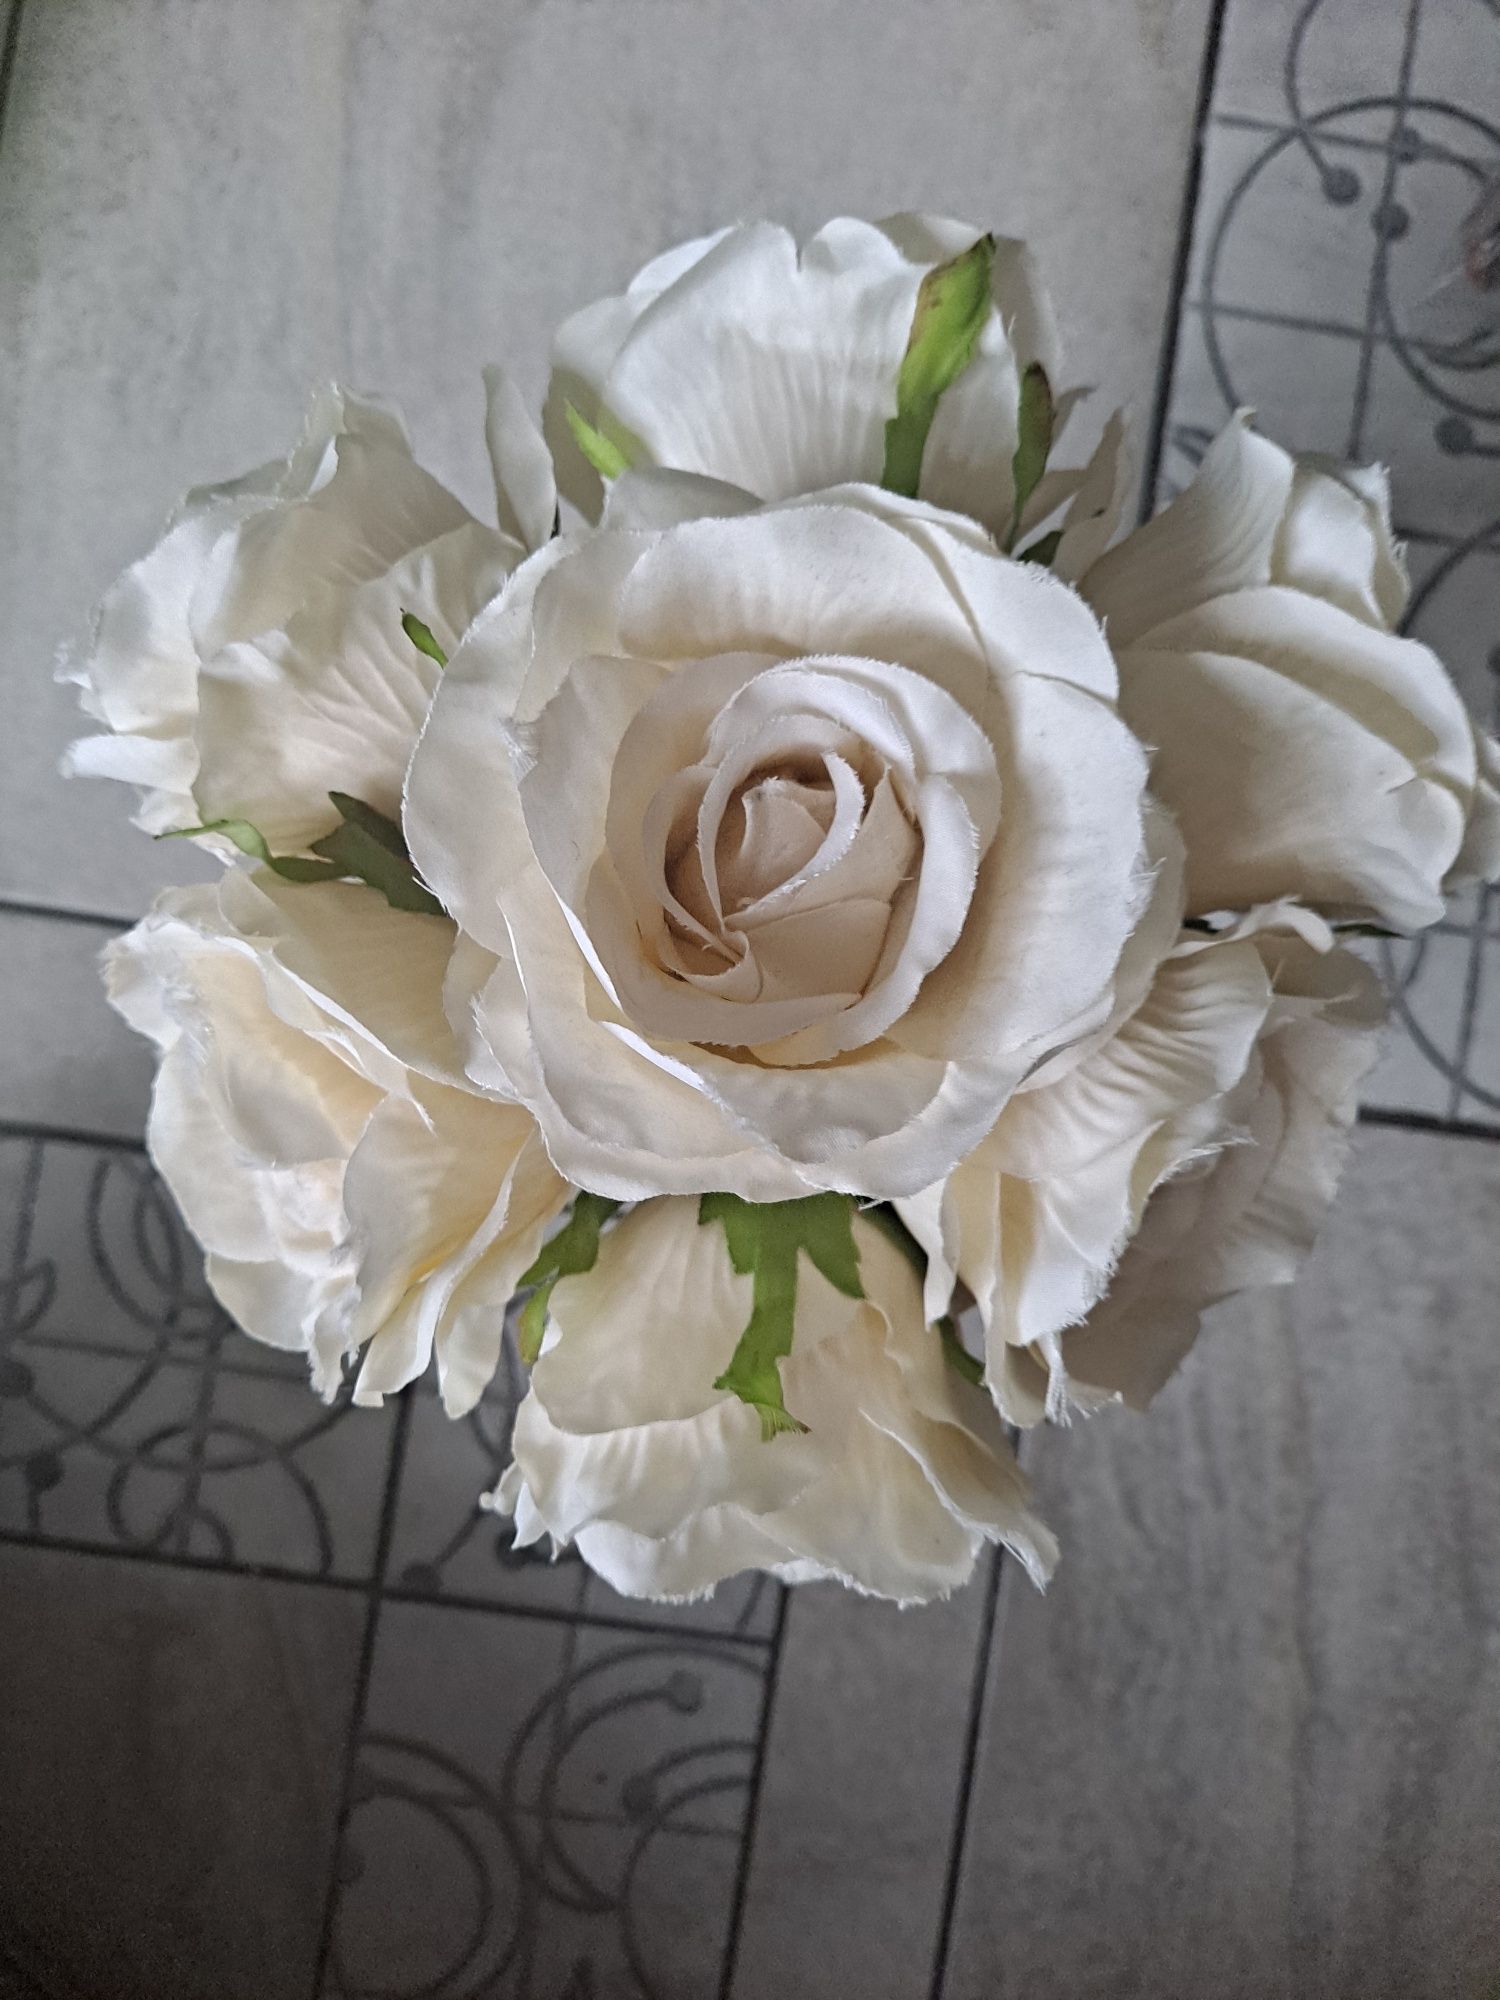 Sztuczne kwiaty białe róże + żółte 2 bukiety + gratis bialy wazon